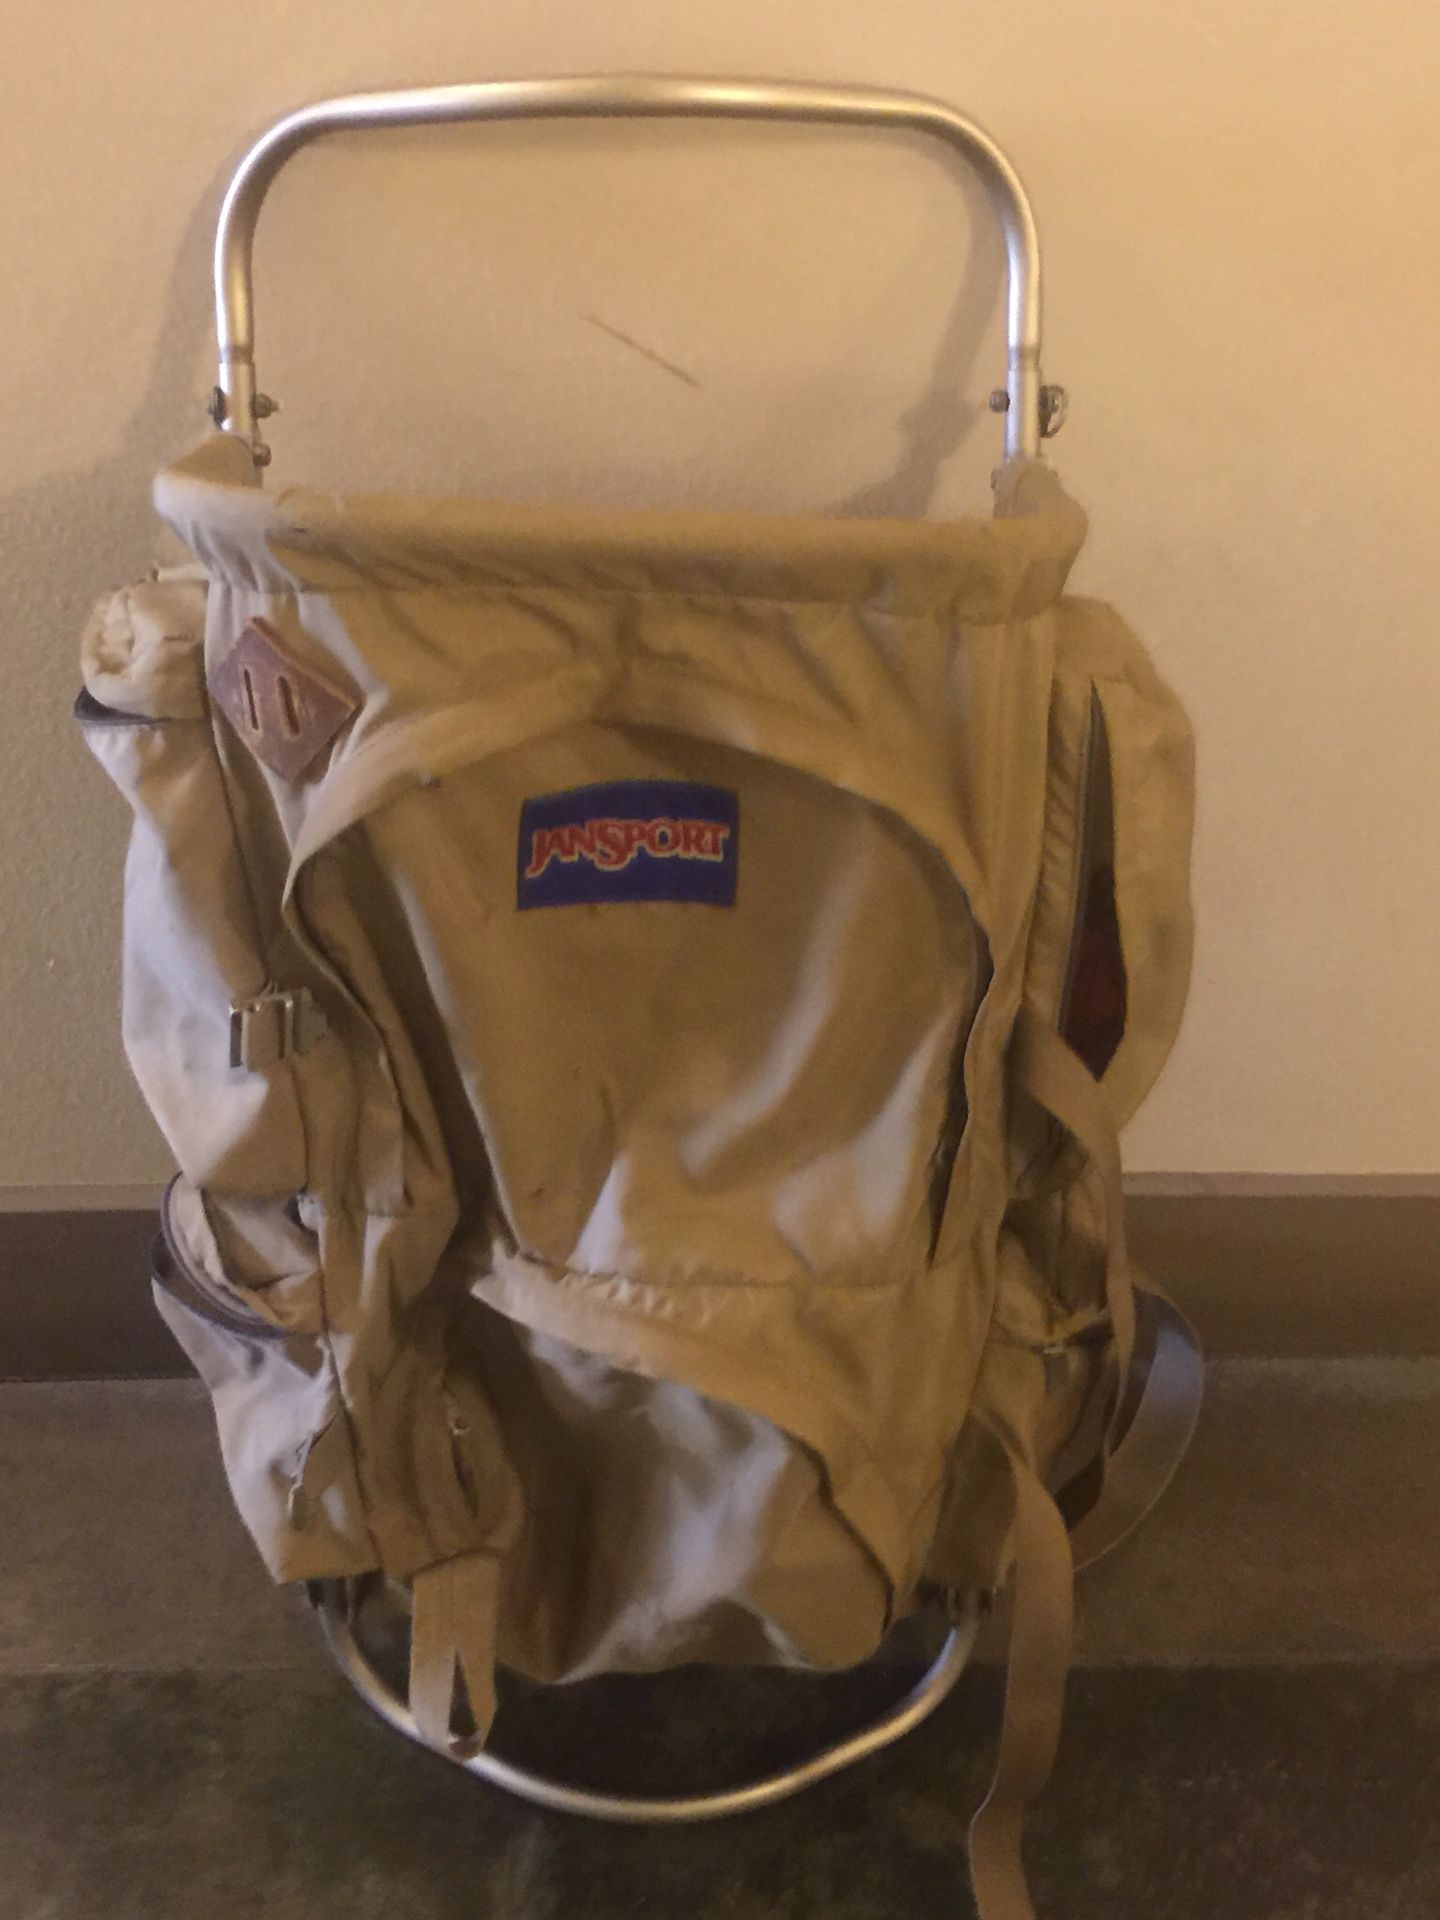 Jansport backpack with aluminum frame